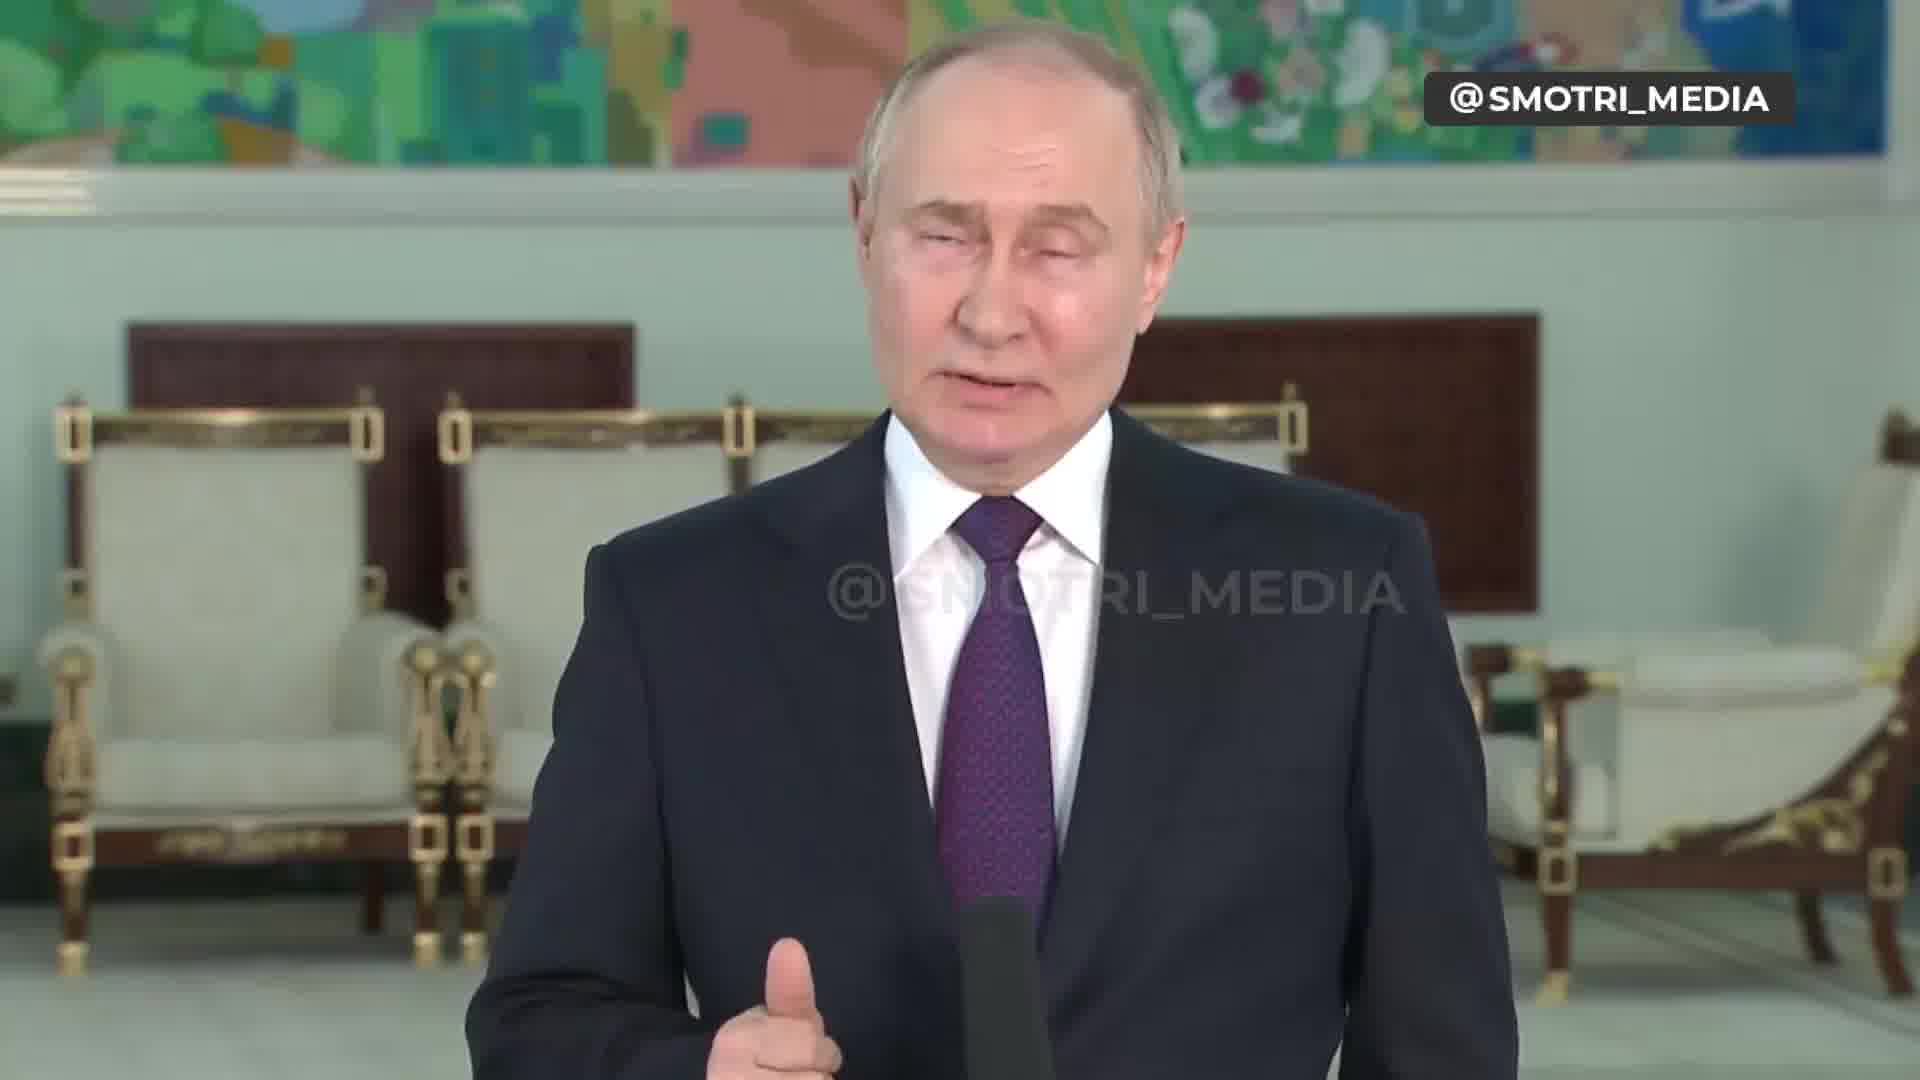 Putin diz que a Verkhovna Rada da Ucrânia é legítima e que o presidente da Verkhovna Rada deveria ser o presidente interino